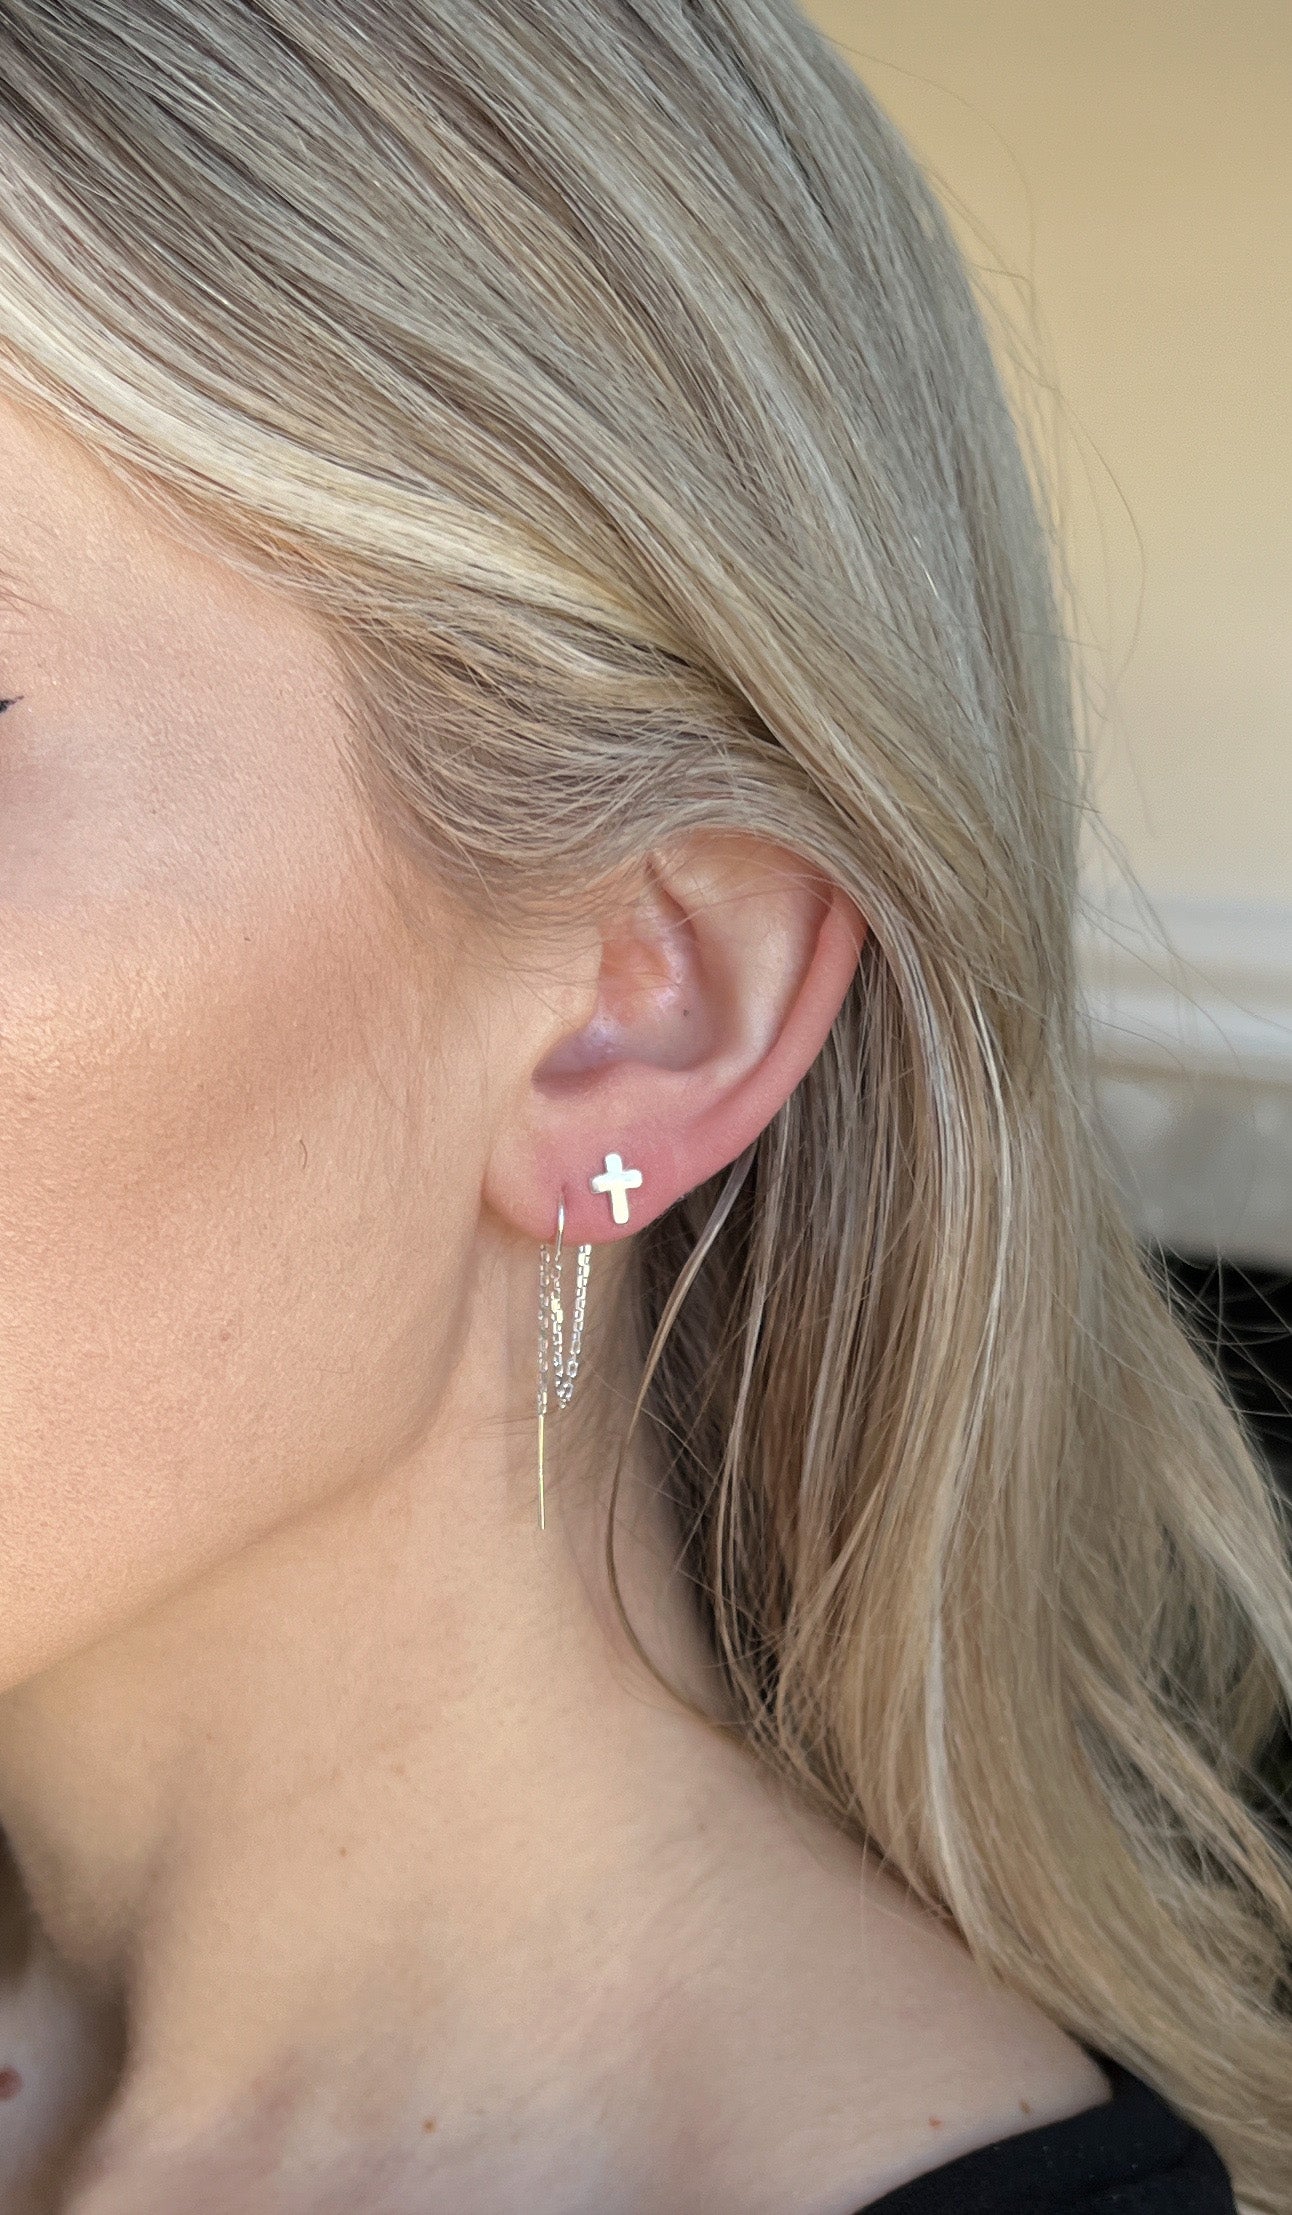 double piercing earrings for women model showing cross stud earring in upper piercing and threader earring in the lower piercing